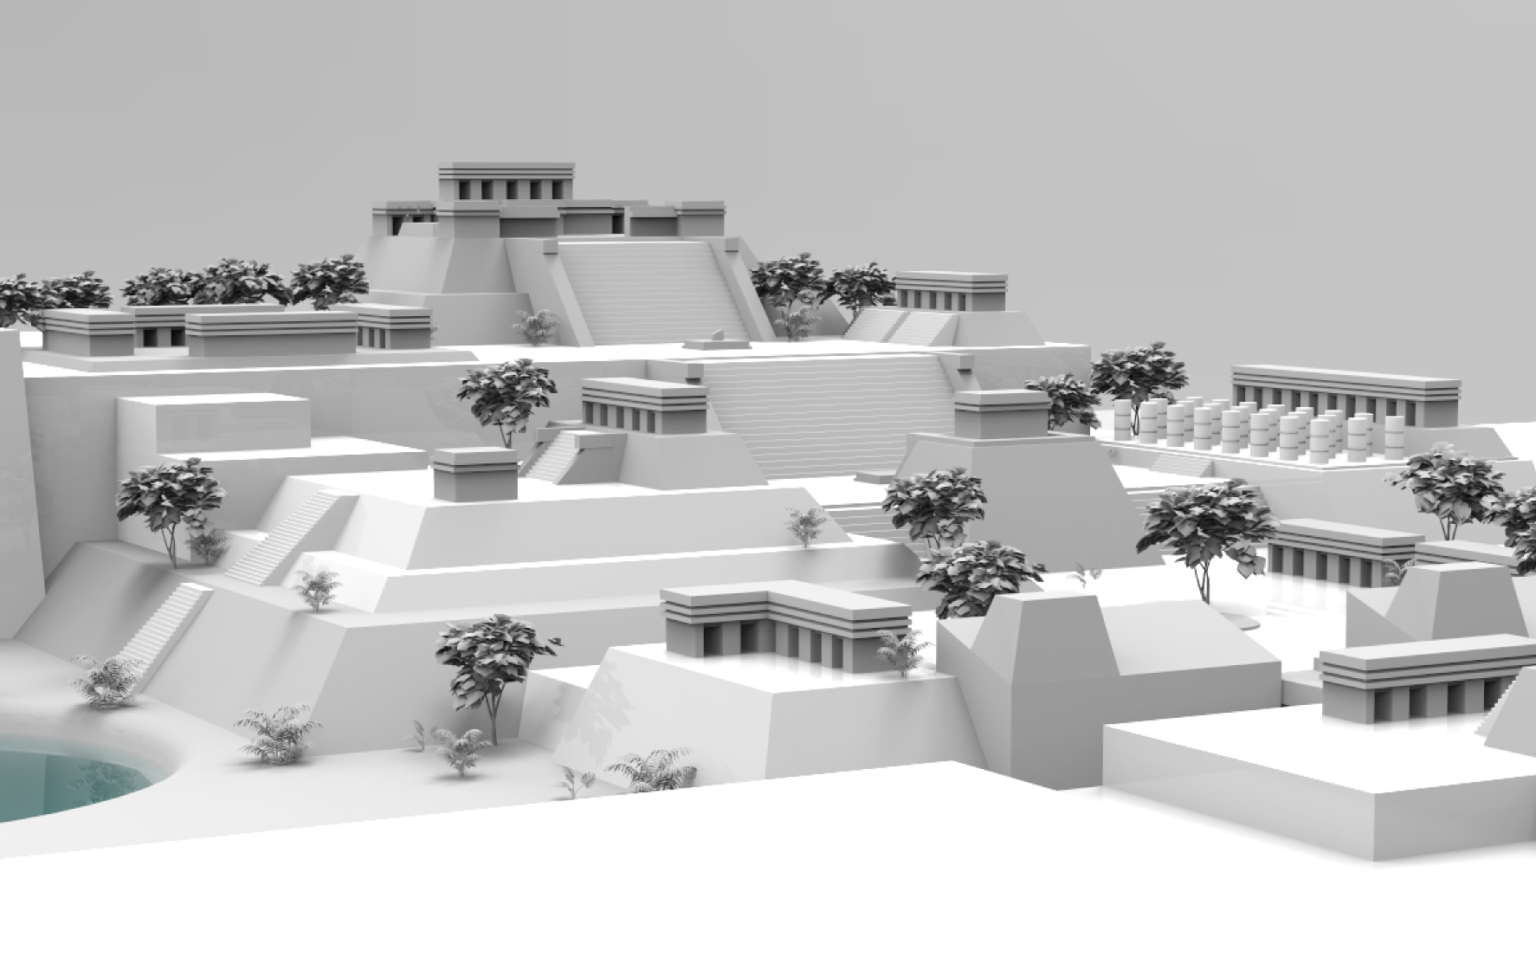 Idealización de la arquitectura de Tayasal, basada en diversas investigaciones arqueológicas.